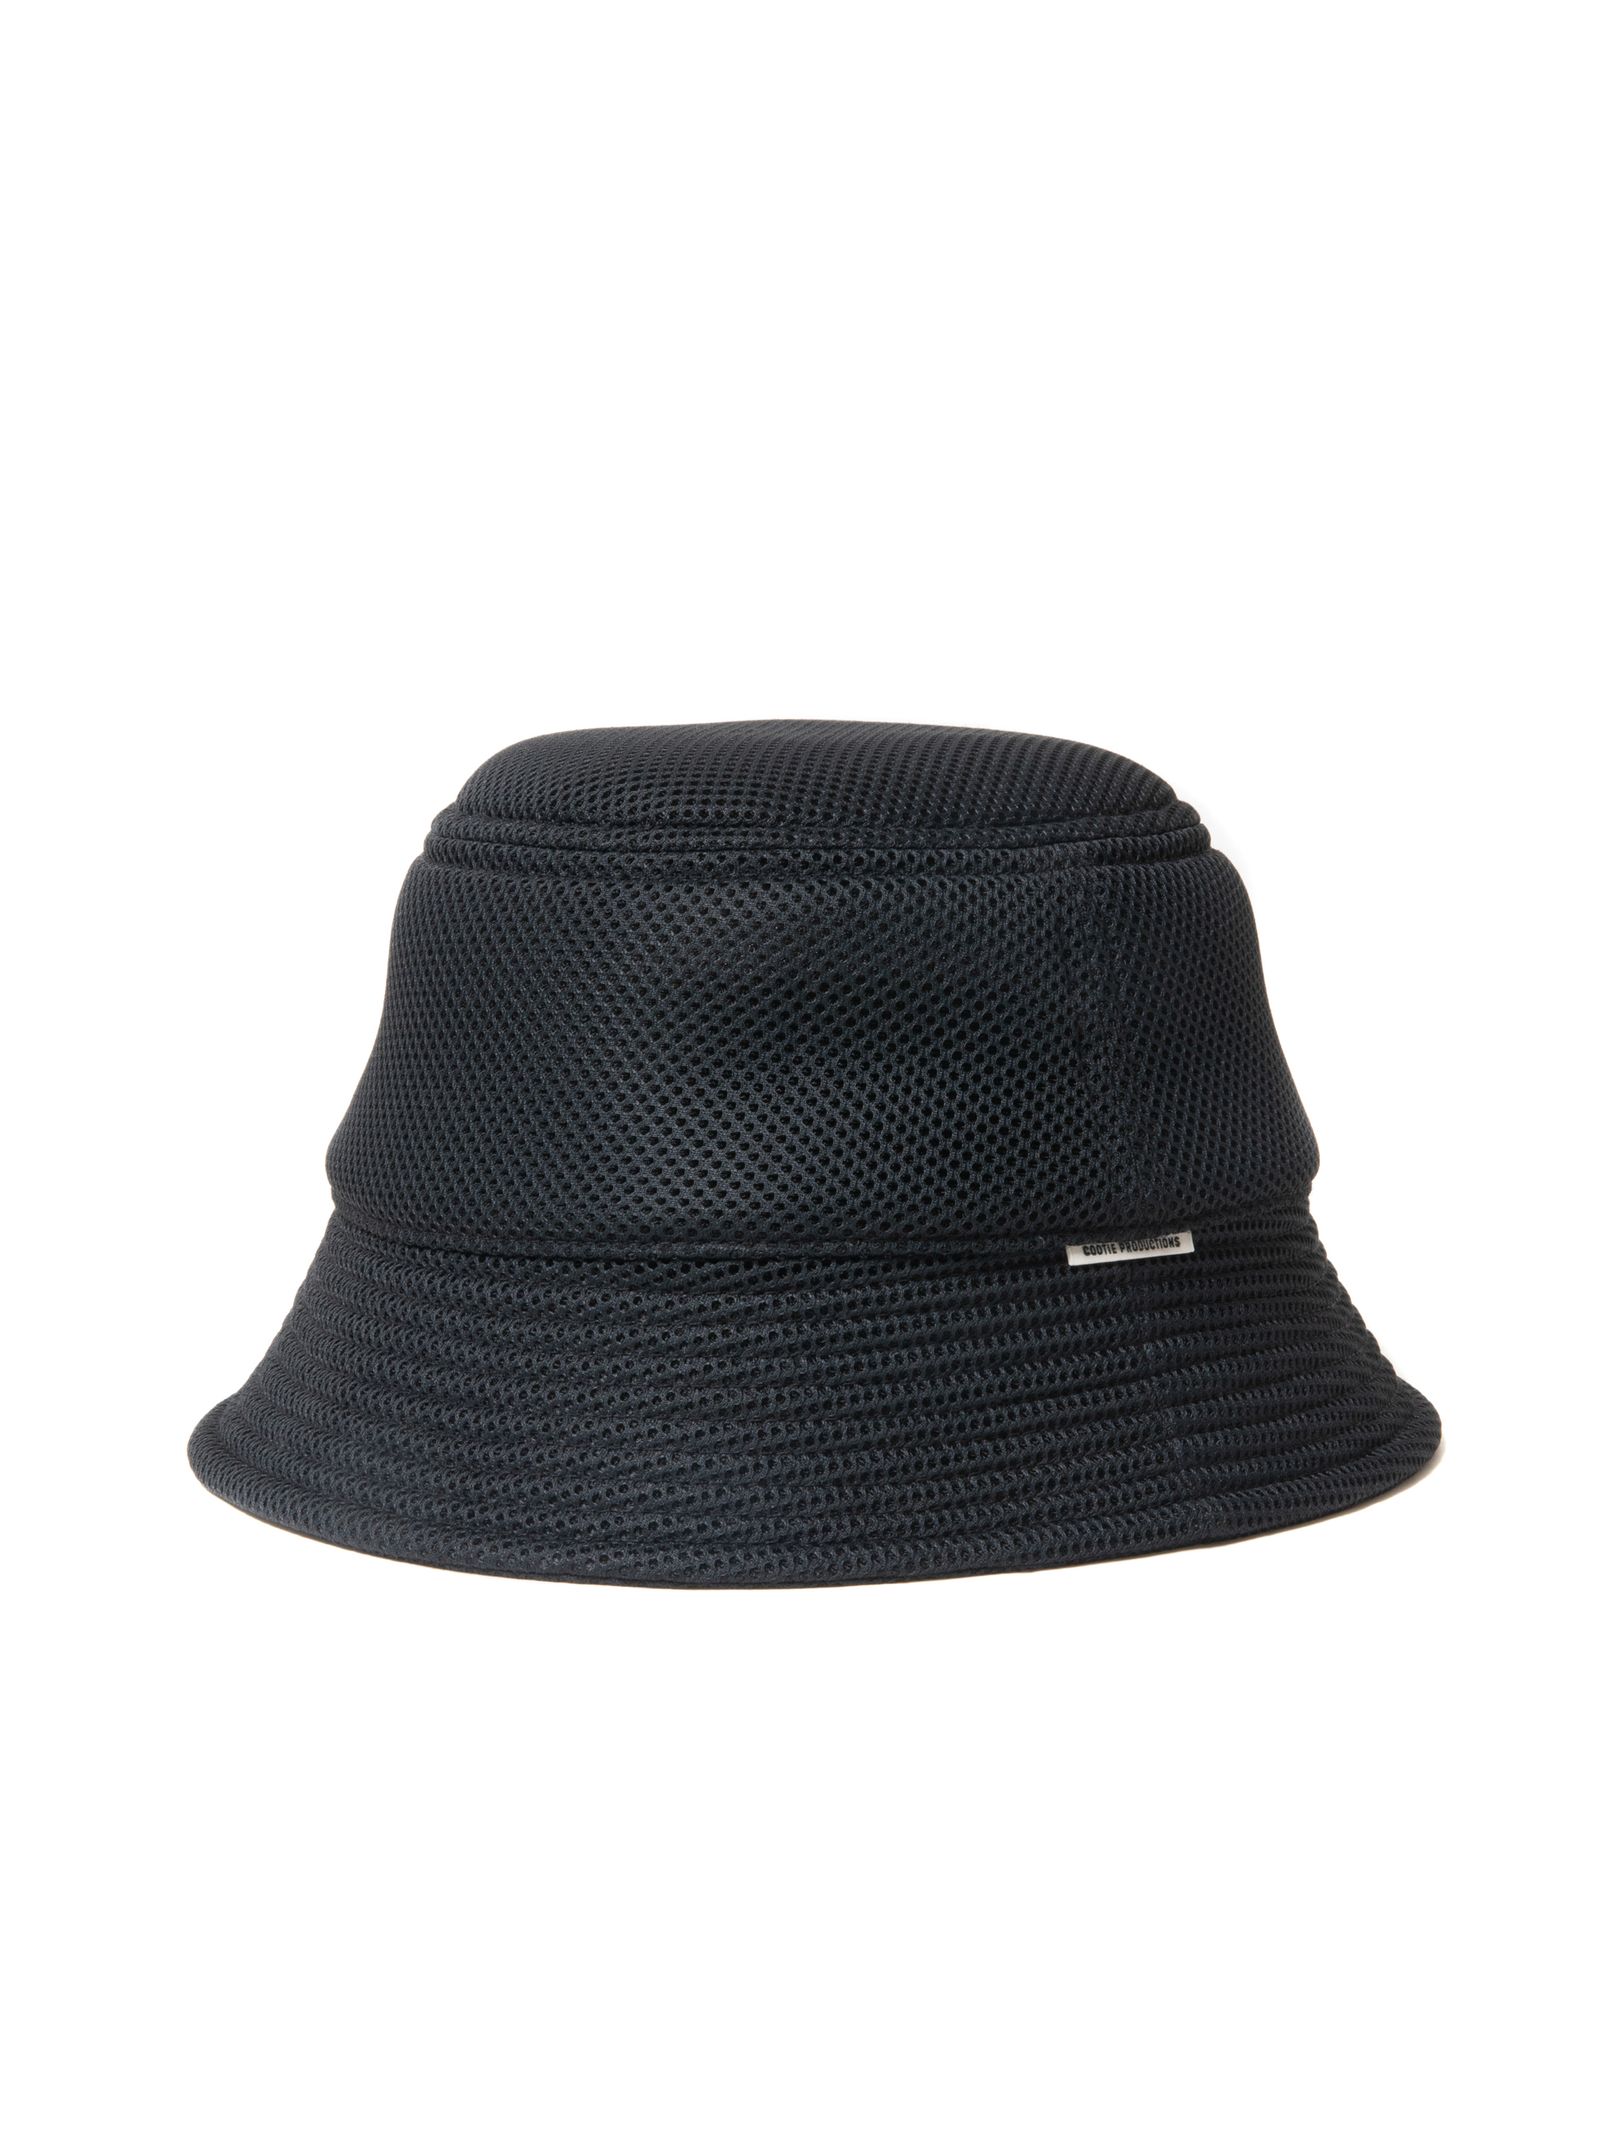 COOTIE PRODUCTIONS - Puff Mesh Bucket Hat (BLACK) / パフメッシュ